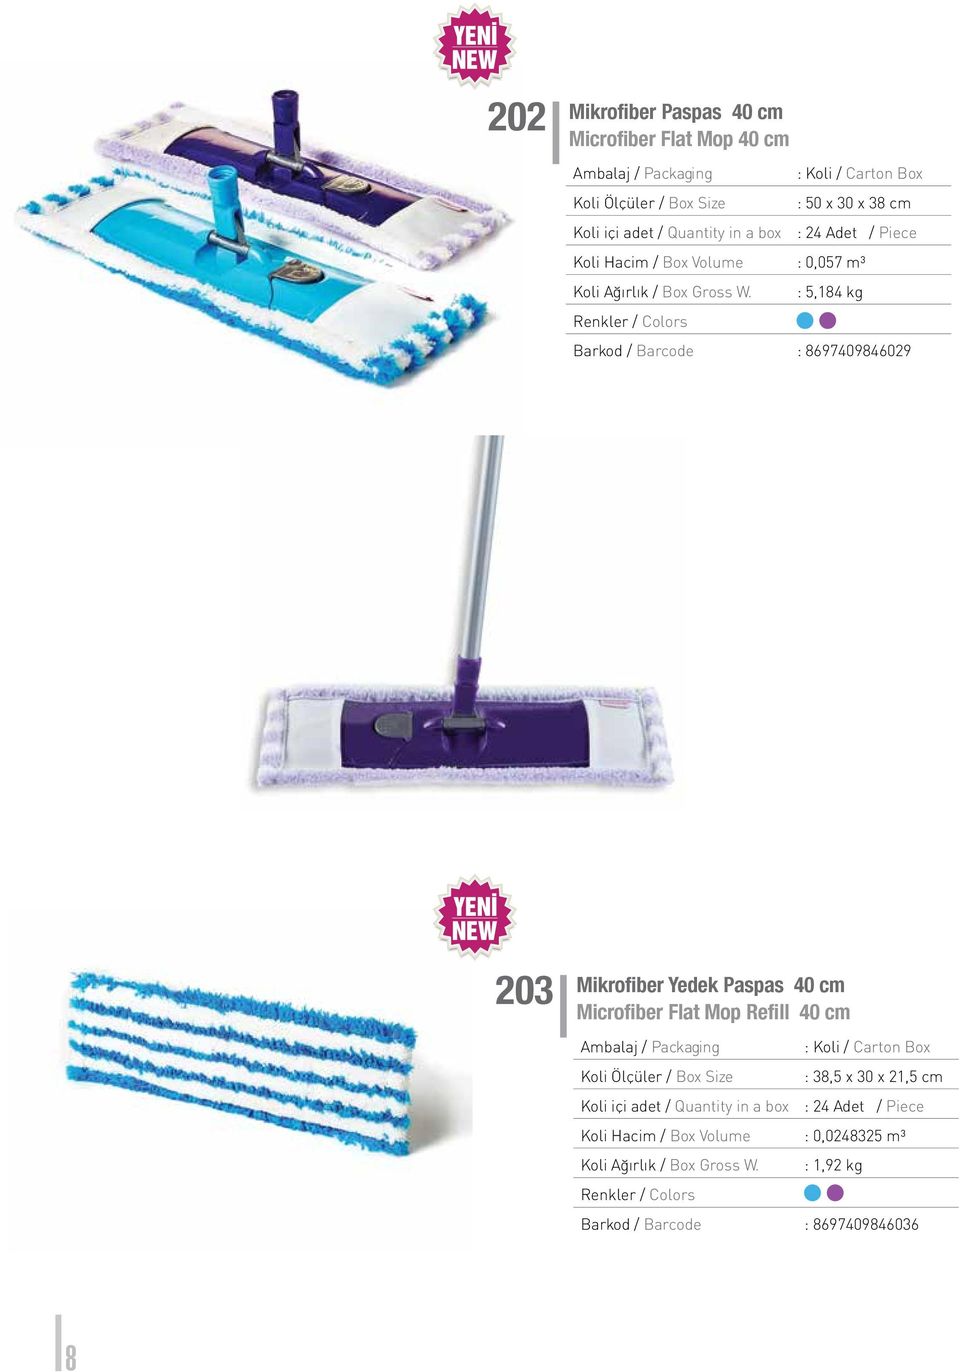 Mikrofiber Yedek Paspas 40 cm Microfiber Flat Mop Refill 40 cm : 38,5 x 30 x 21,5 cm Koli içi adet /